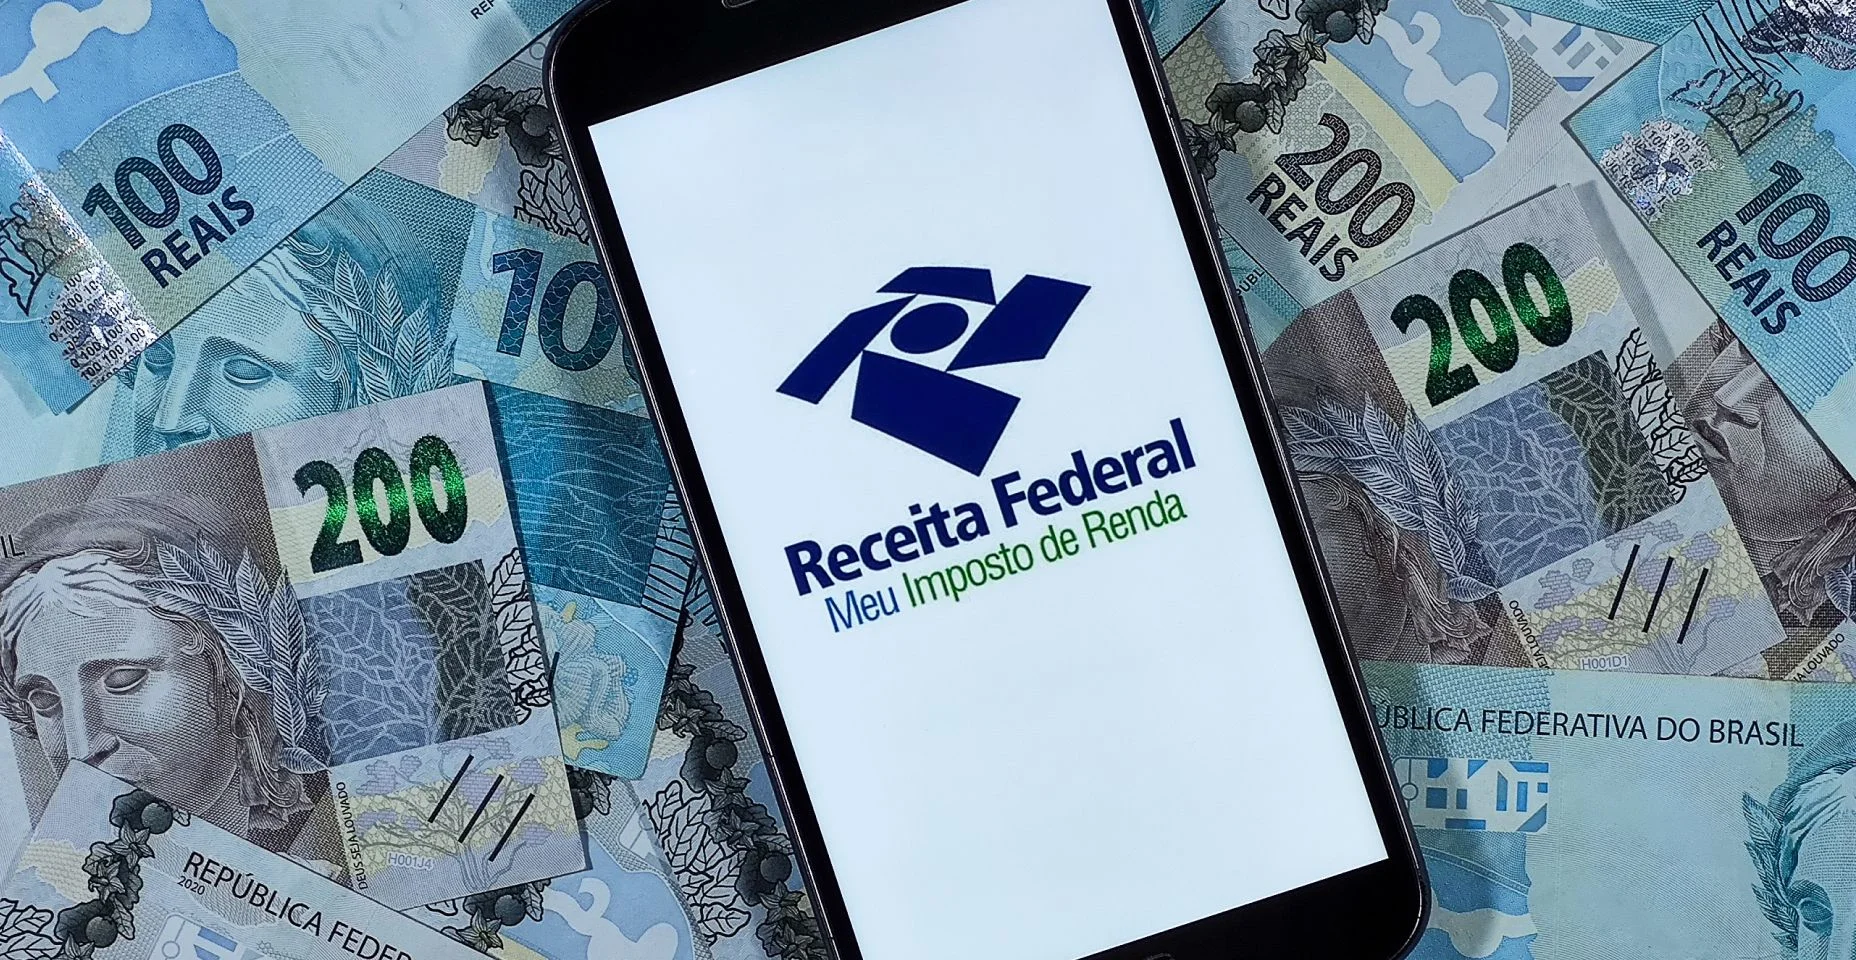 Logotipo da Receita Federal - Meu imposto de Renda na tela do smartphone com notas de 100 reais e 200 reais.